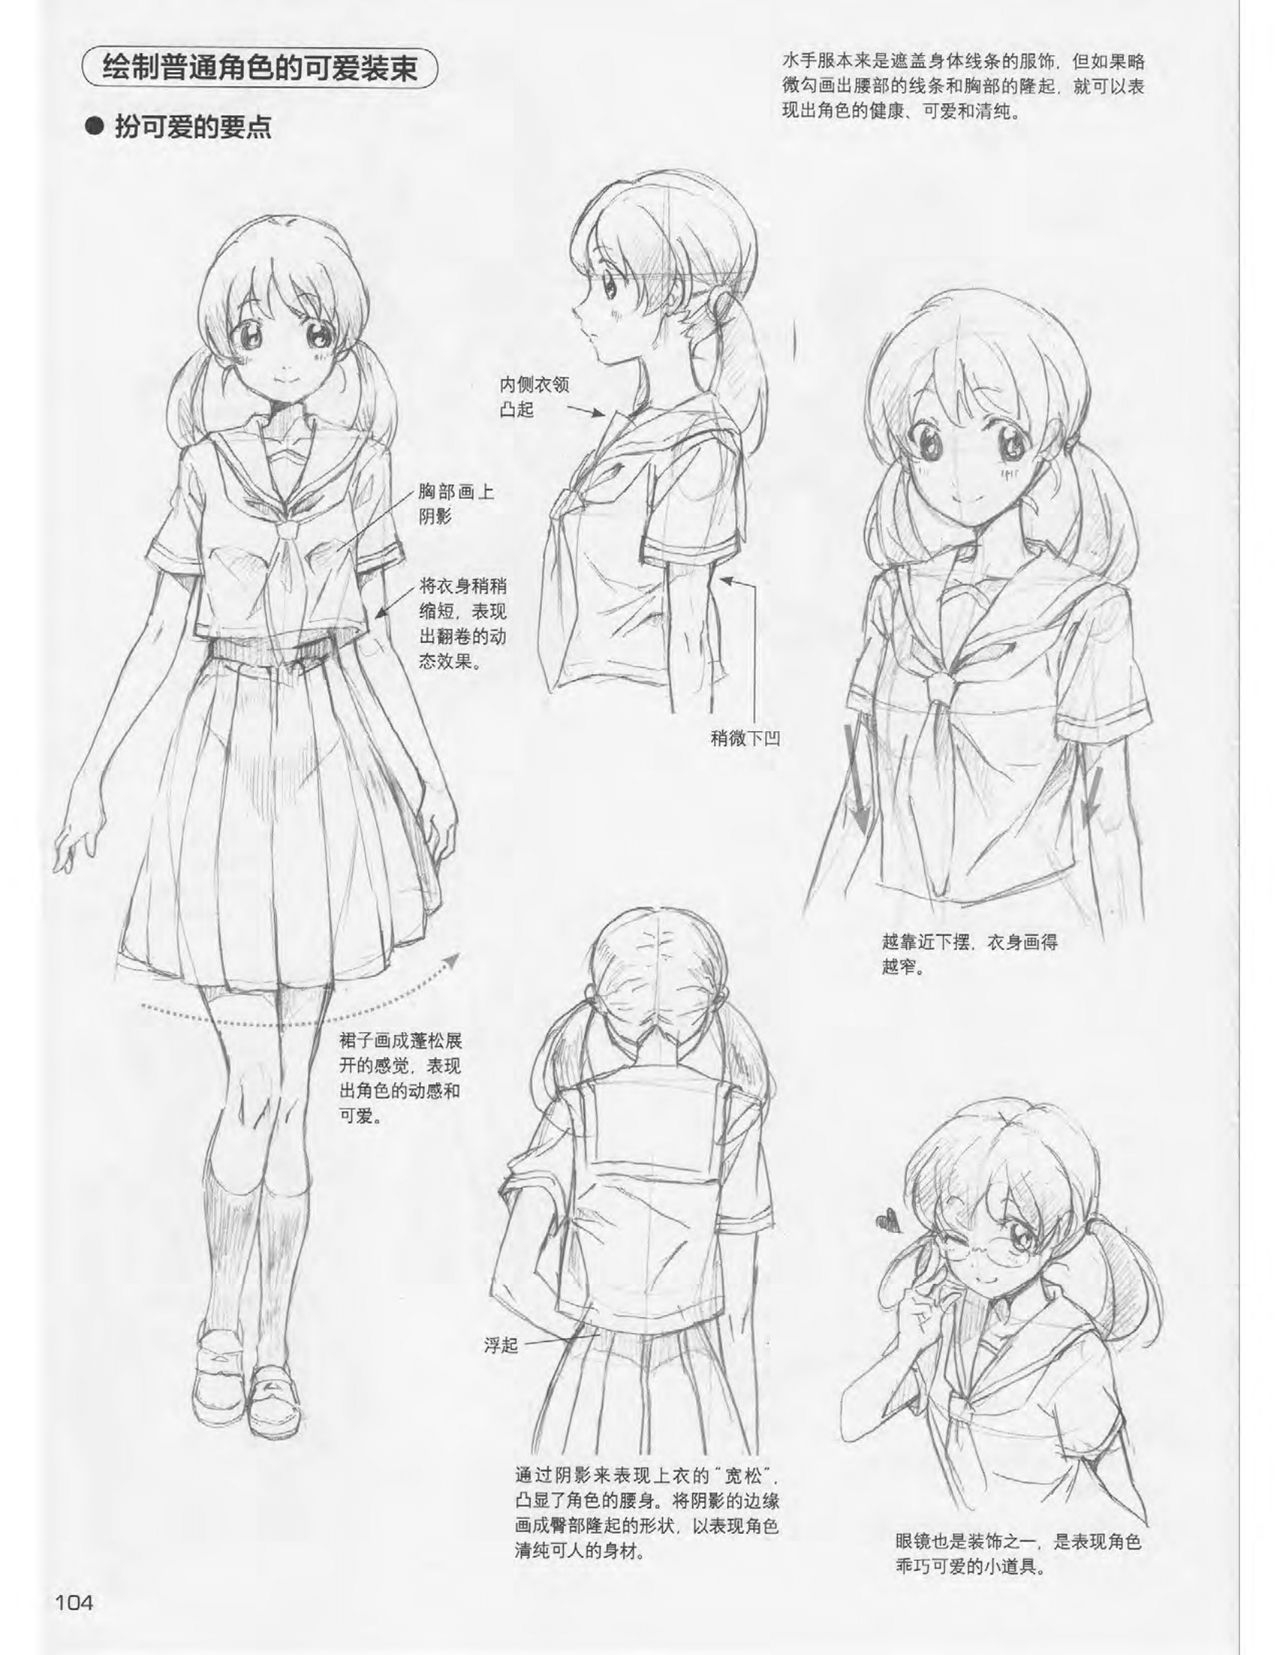 Japanese Manga Master Lecture 3: Lin Akira and Kakumaru Maru Talk About Glamorous Character Modeling 104